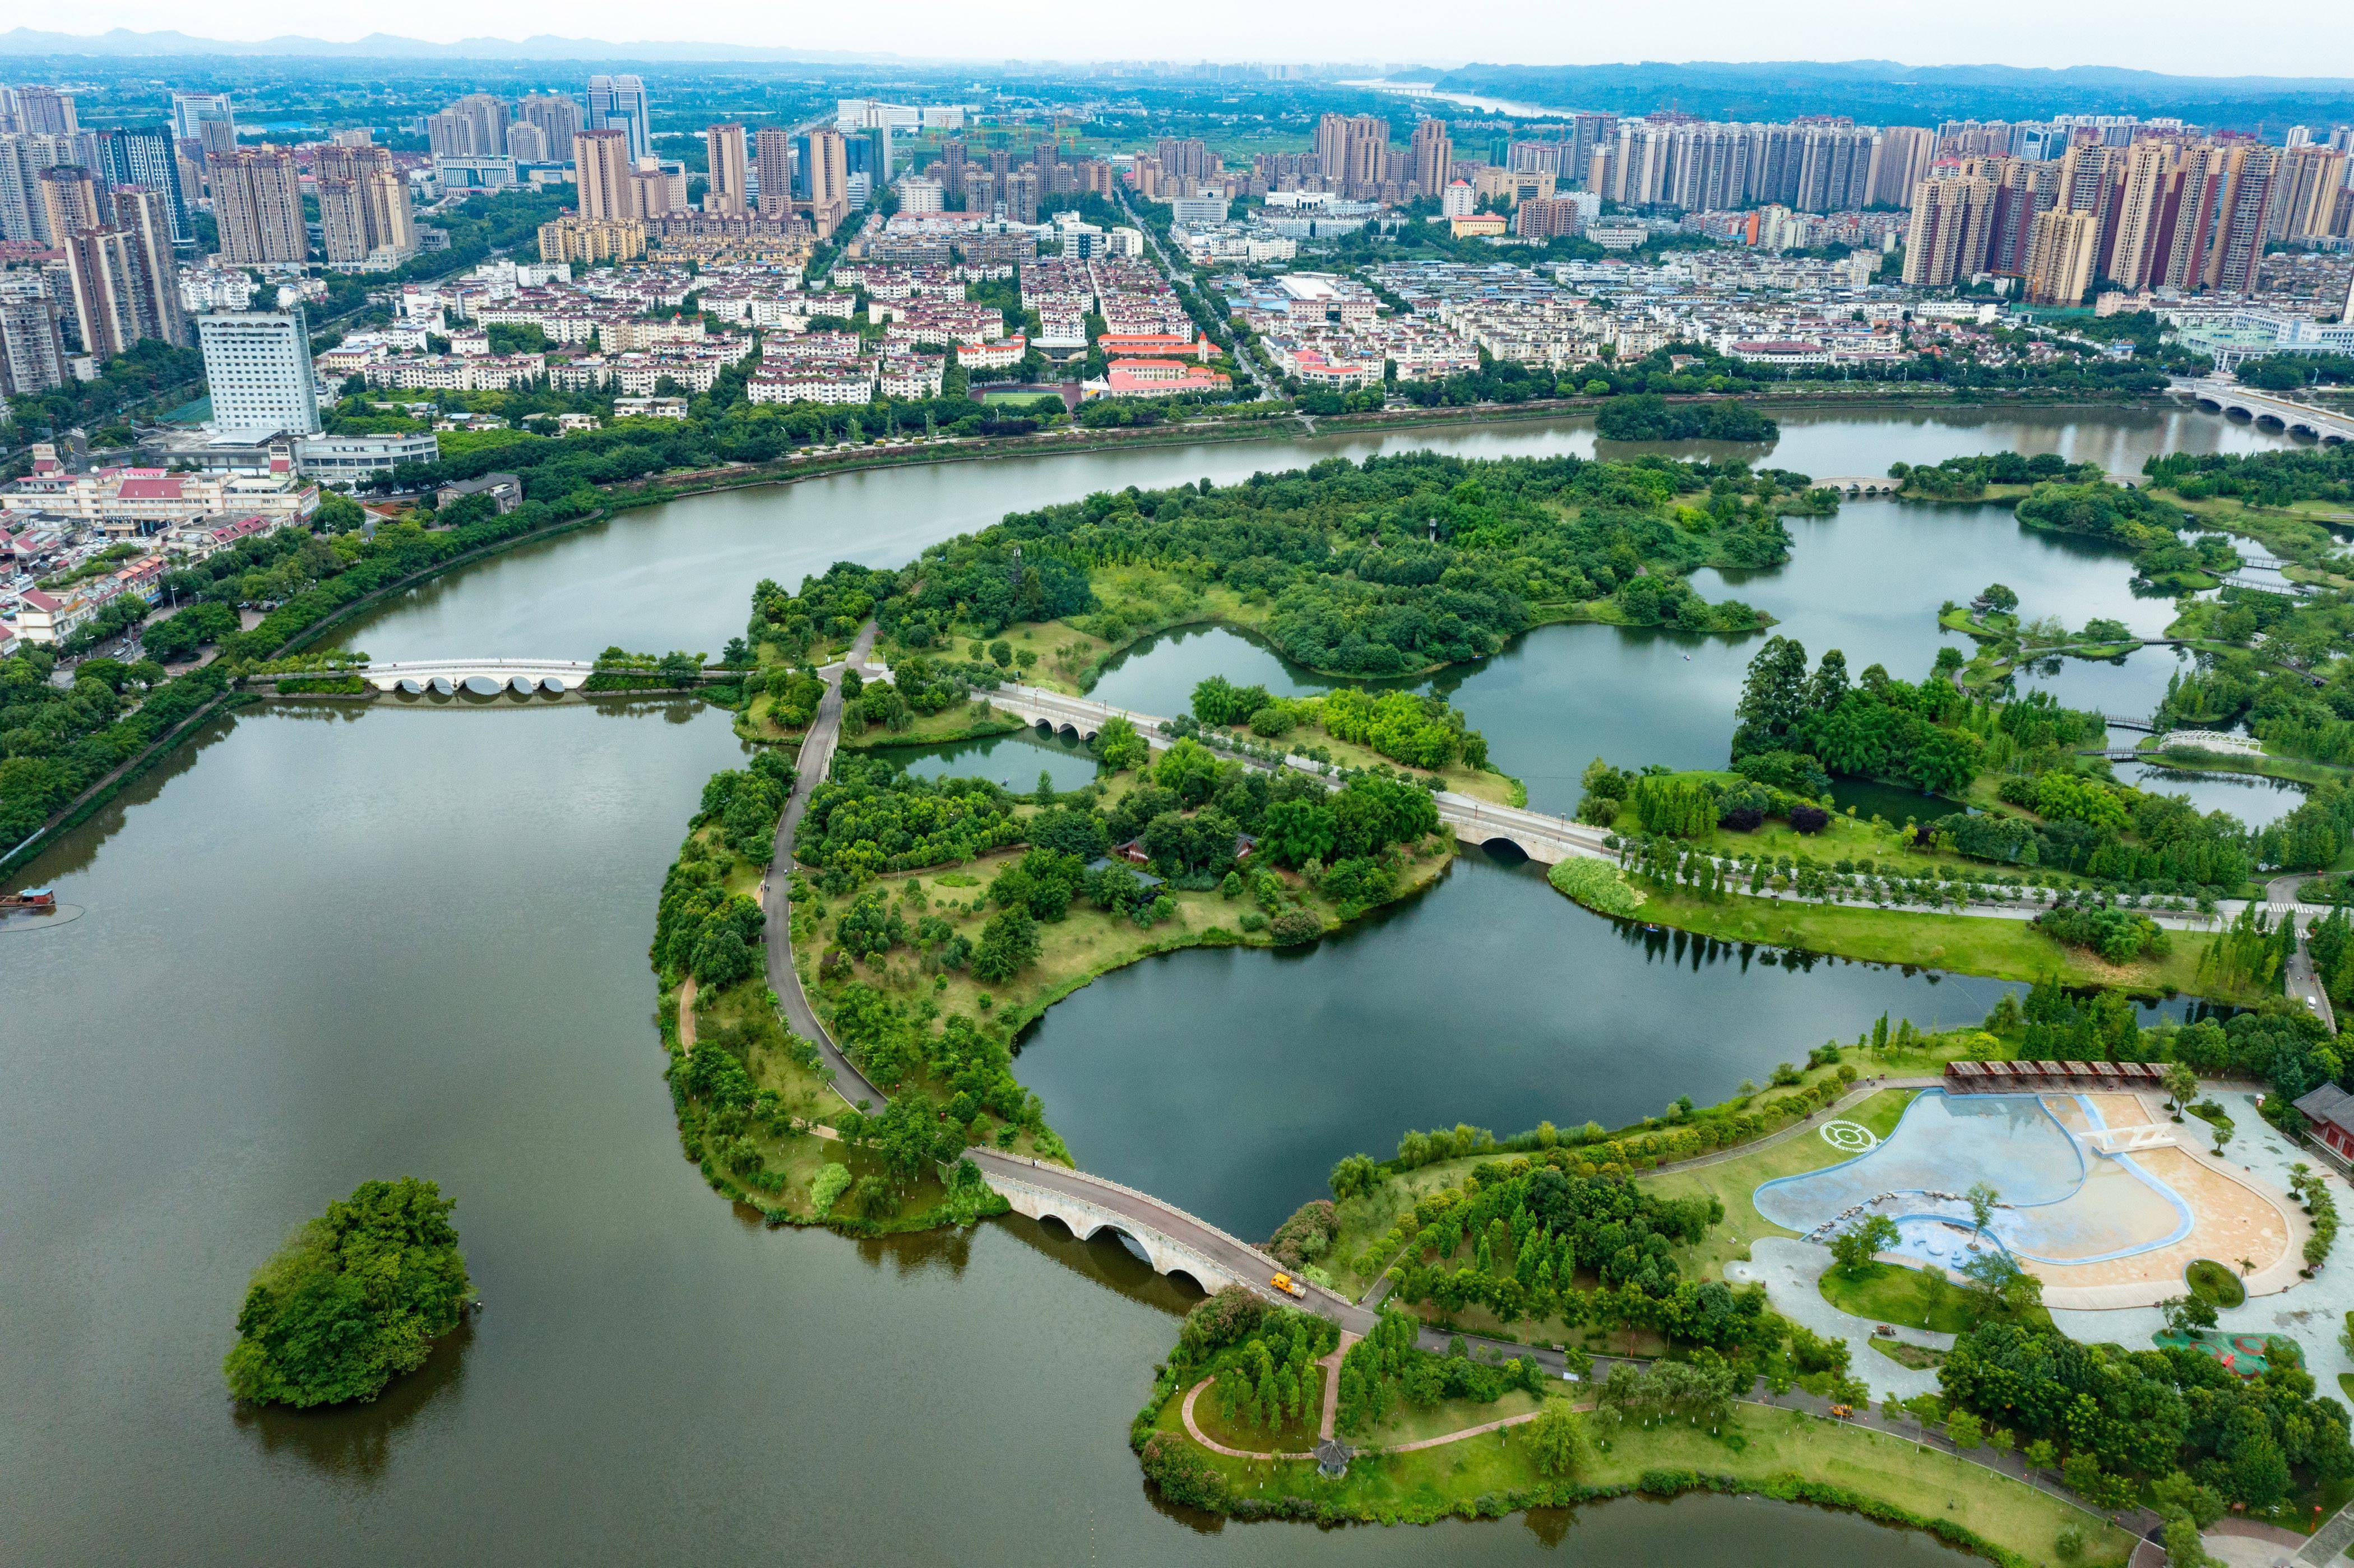 这是无人机拍摄的眉山东坡城市湿地公园全景(中)和周边建筑群(6月23日